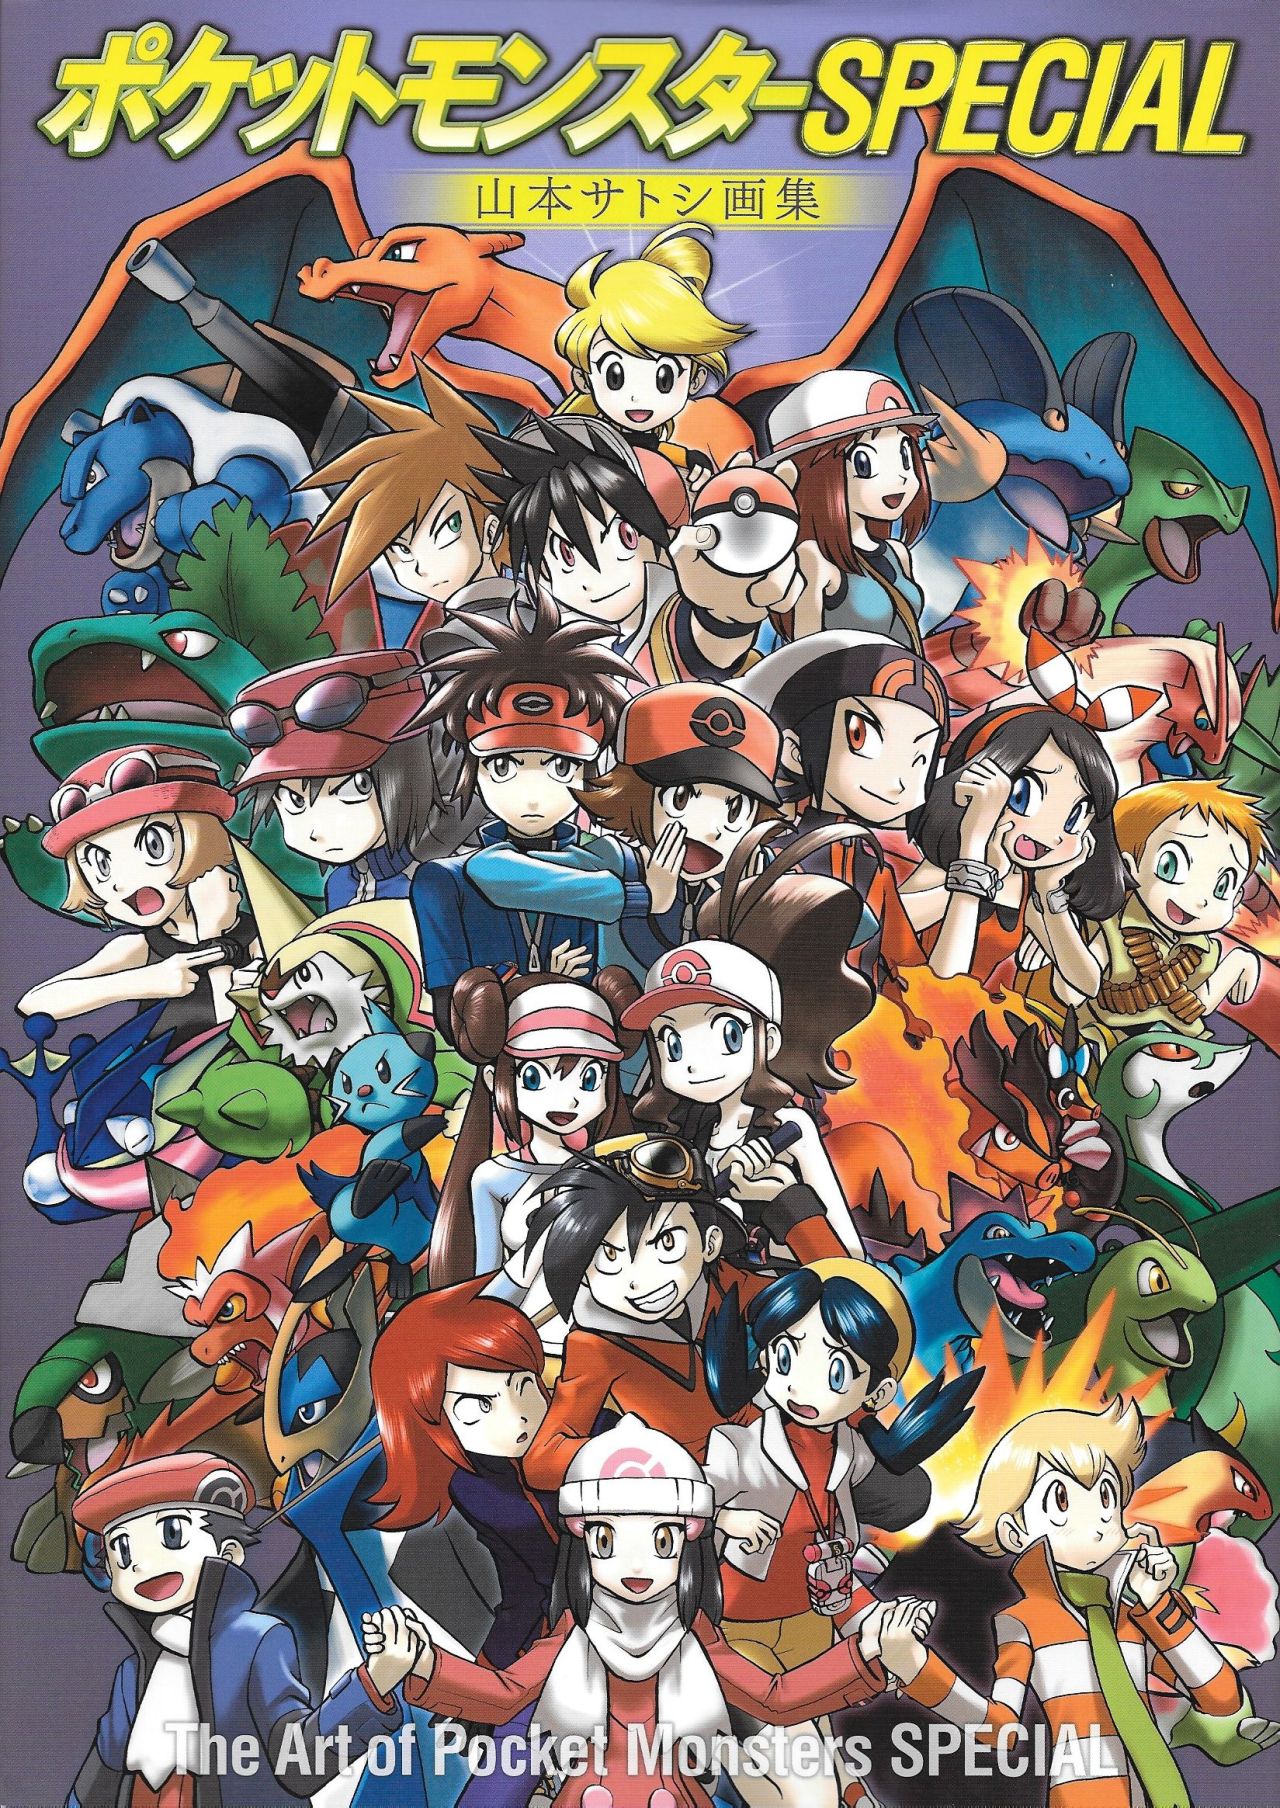 Wallpapers Pokémon: Presos na tela! - Sweet Magic